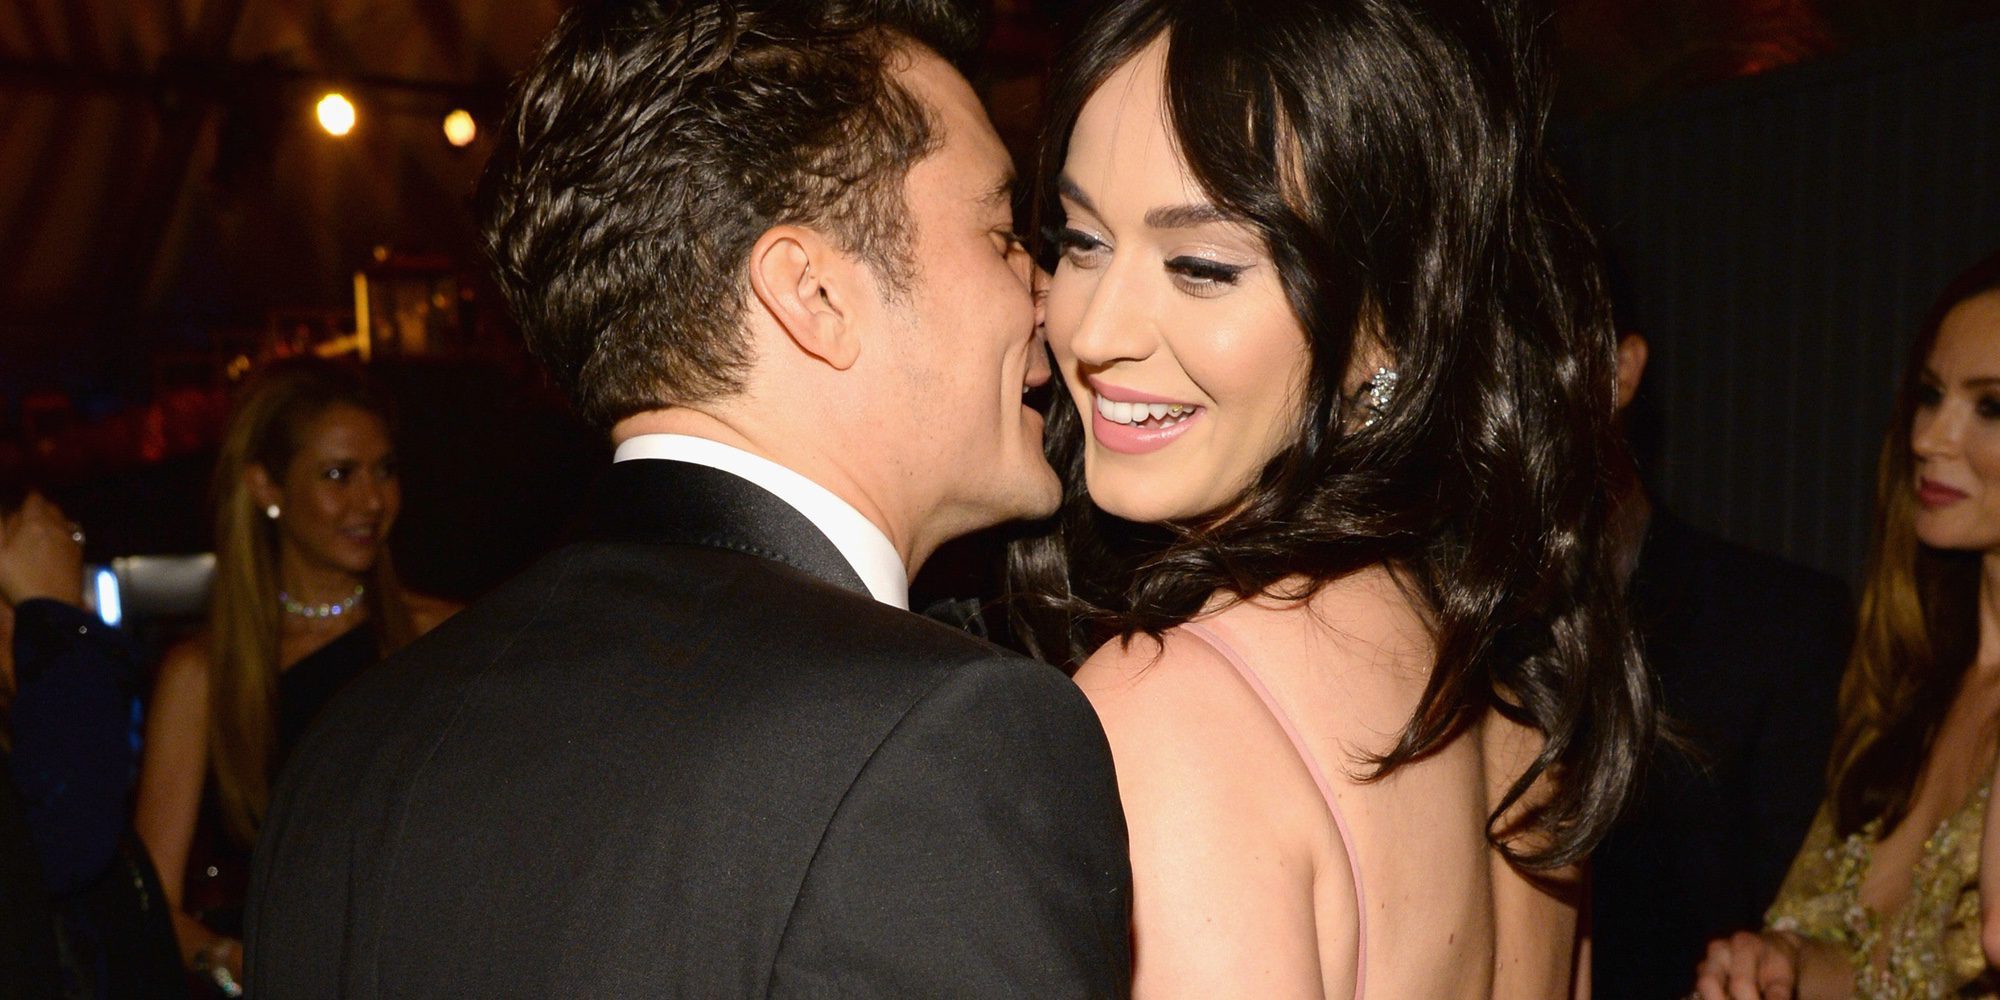 Abrazos y beso en la boca: Orlando Bloom y Katy Perry se ponen románticos en Cerdeña